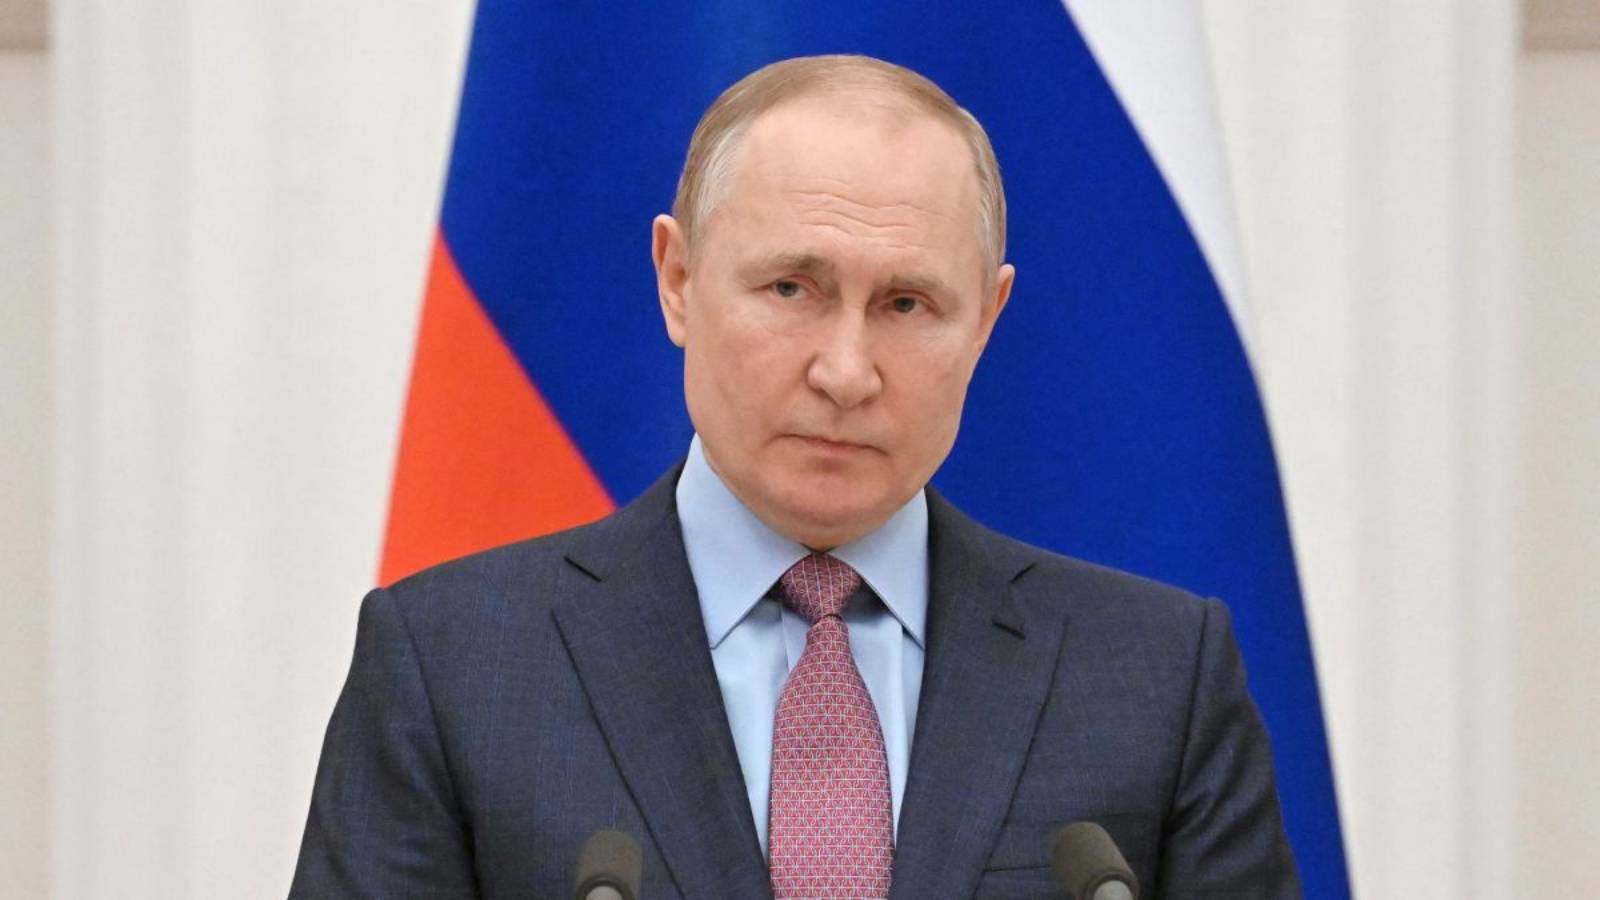 Le sanzioni di Vladimir Putin generano problemi colossali nel settore IT